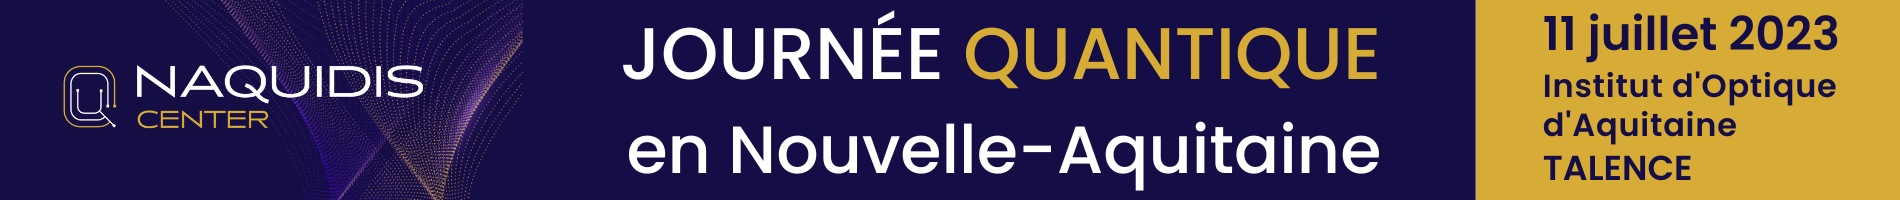 Header evenement ALPHA-RLH Journée Quantique en Nouvelle-Aquitaine